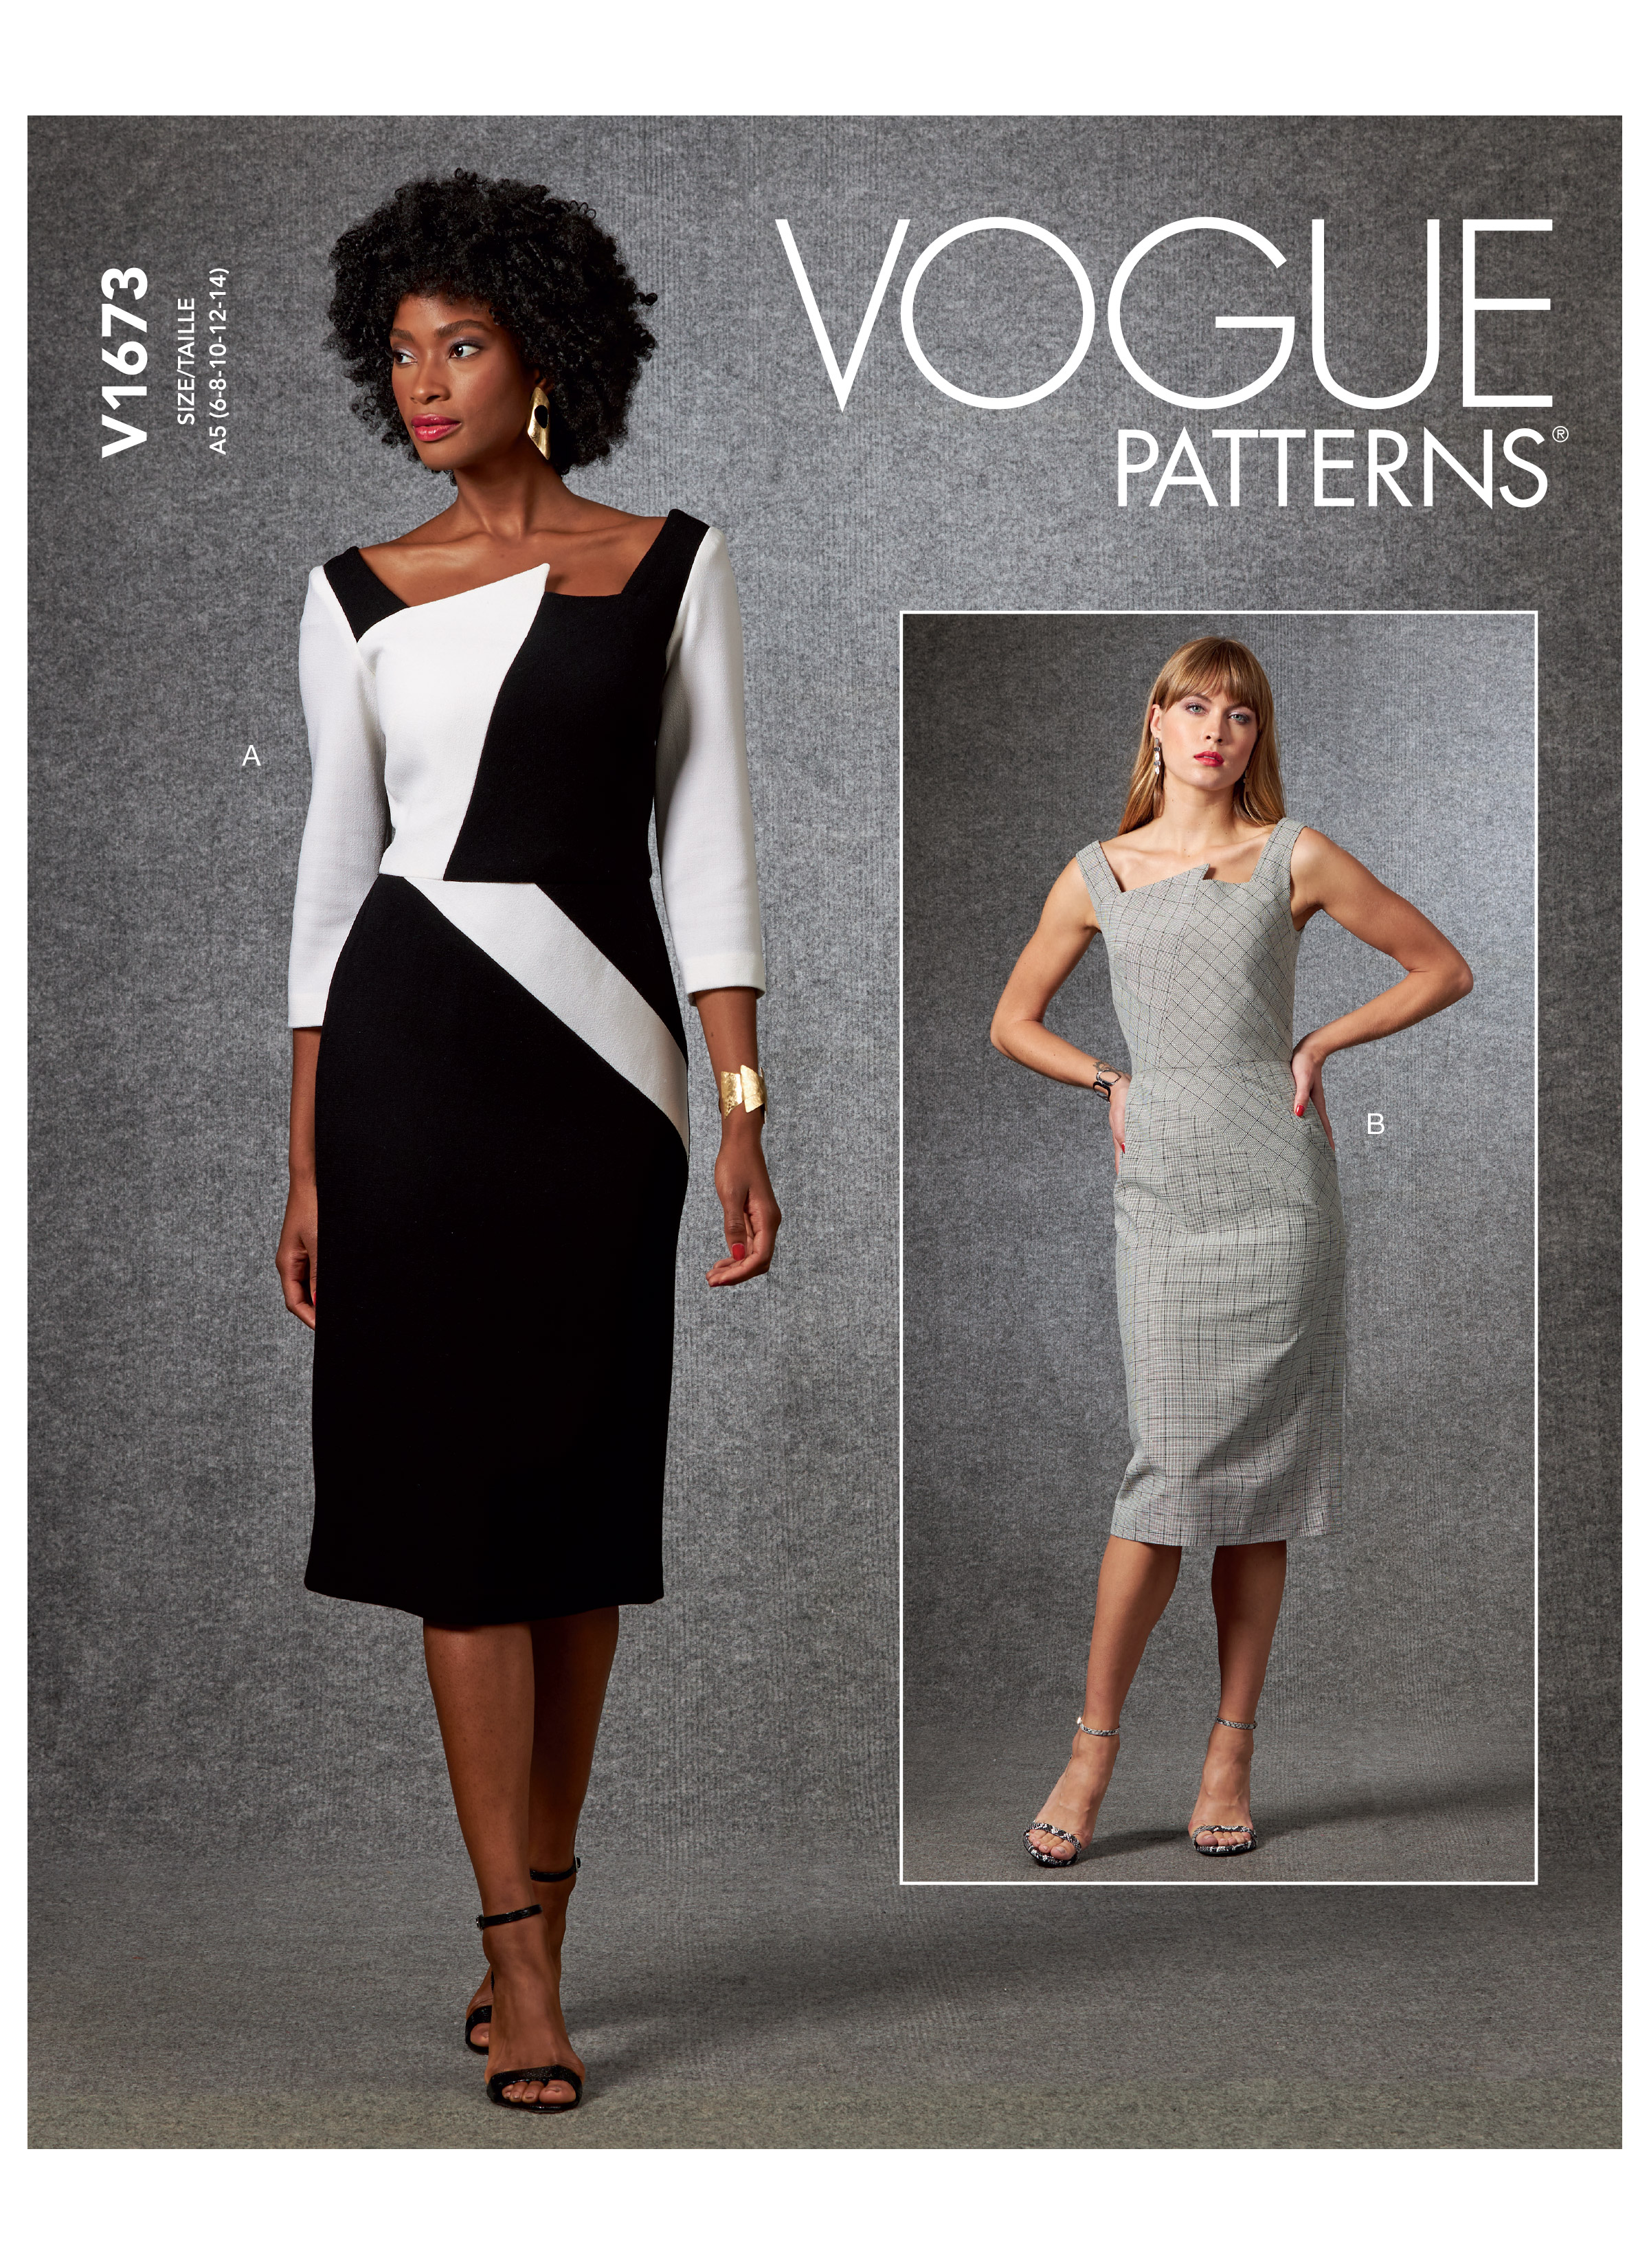 Vogue Patterns 1673 MISSES' DRESS